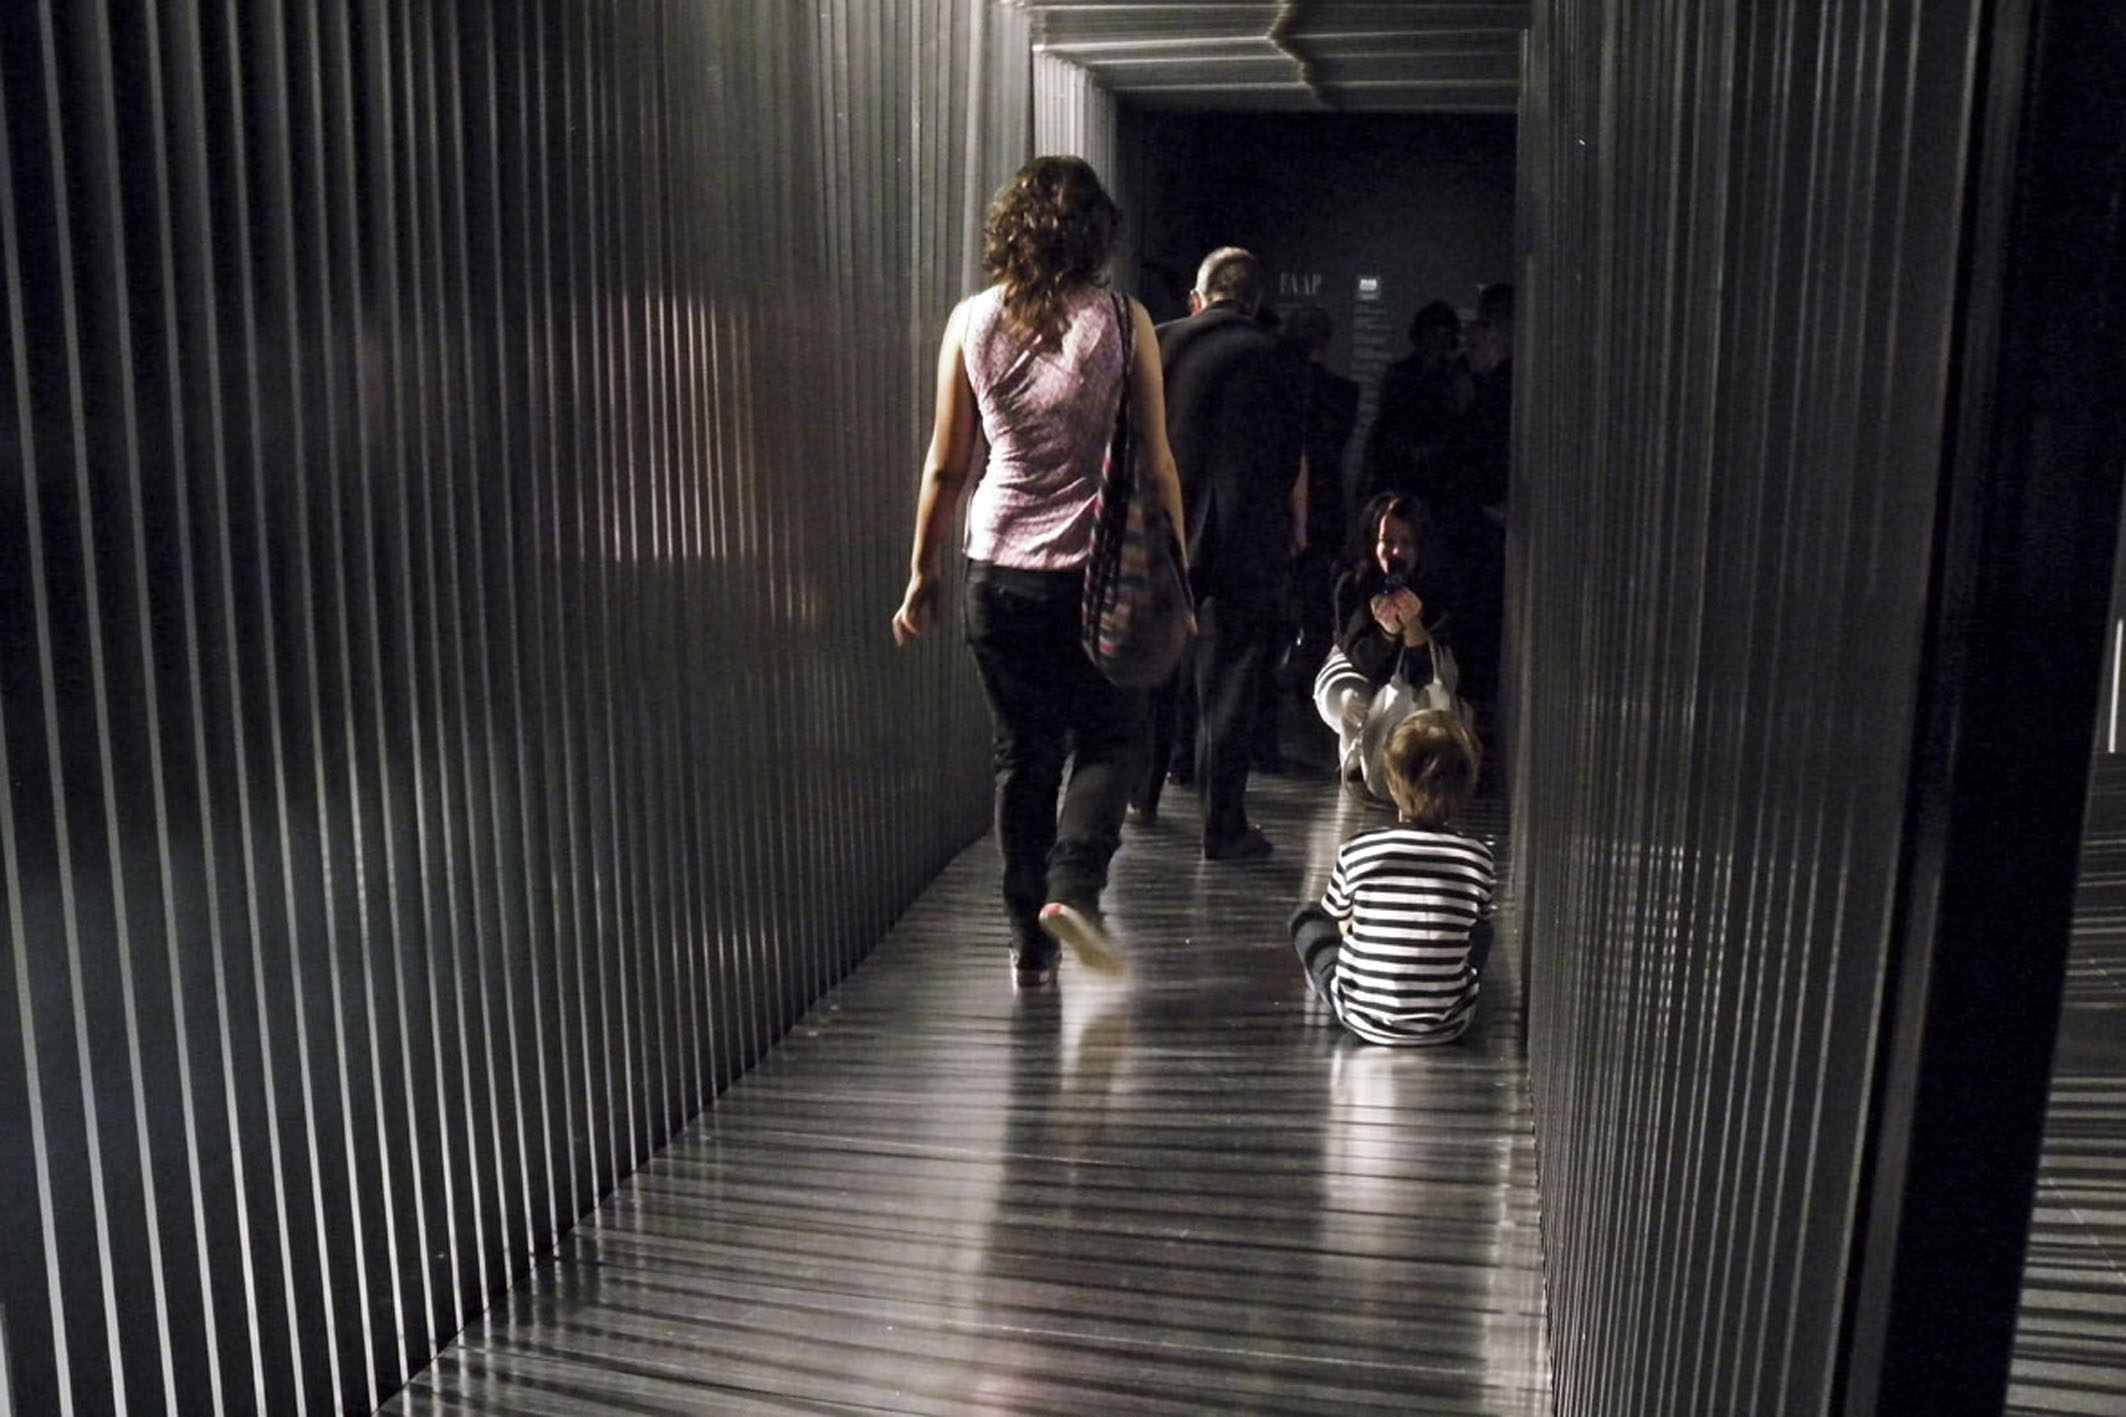    tunnel | túnel    @ museu de arte b. da faap 2010   + expo  